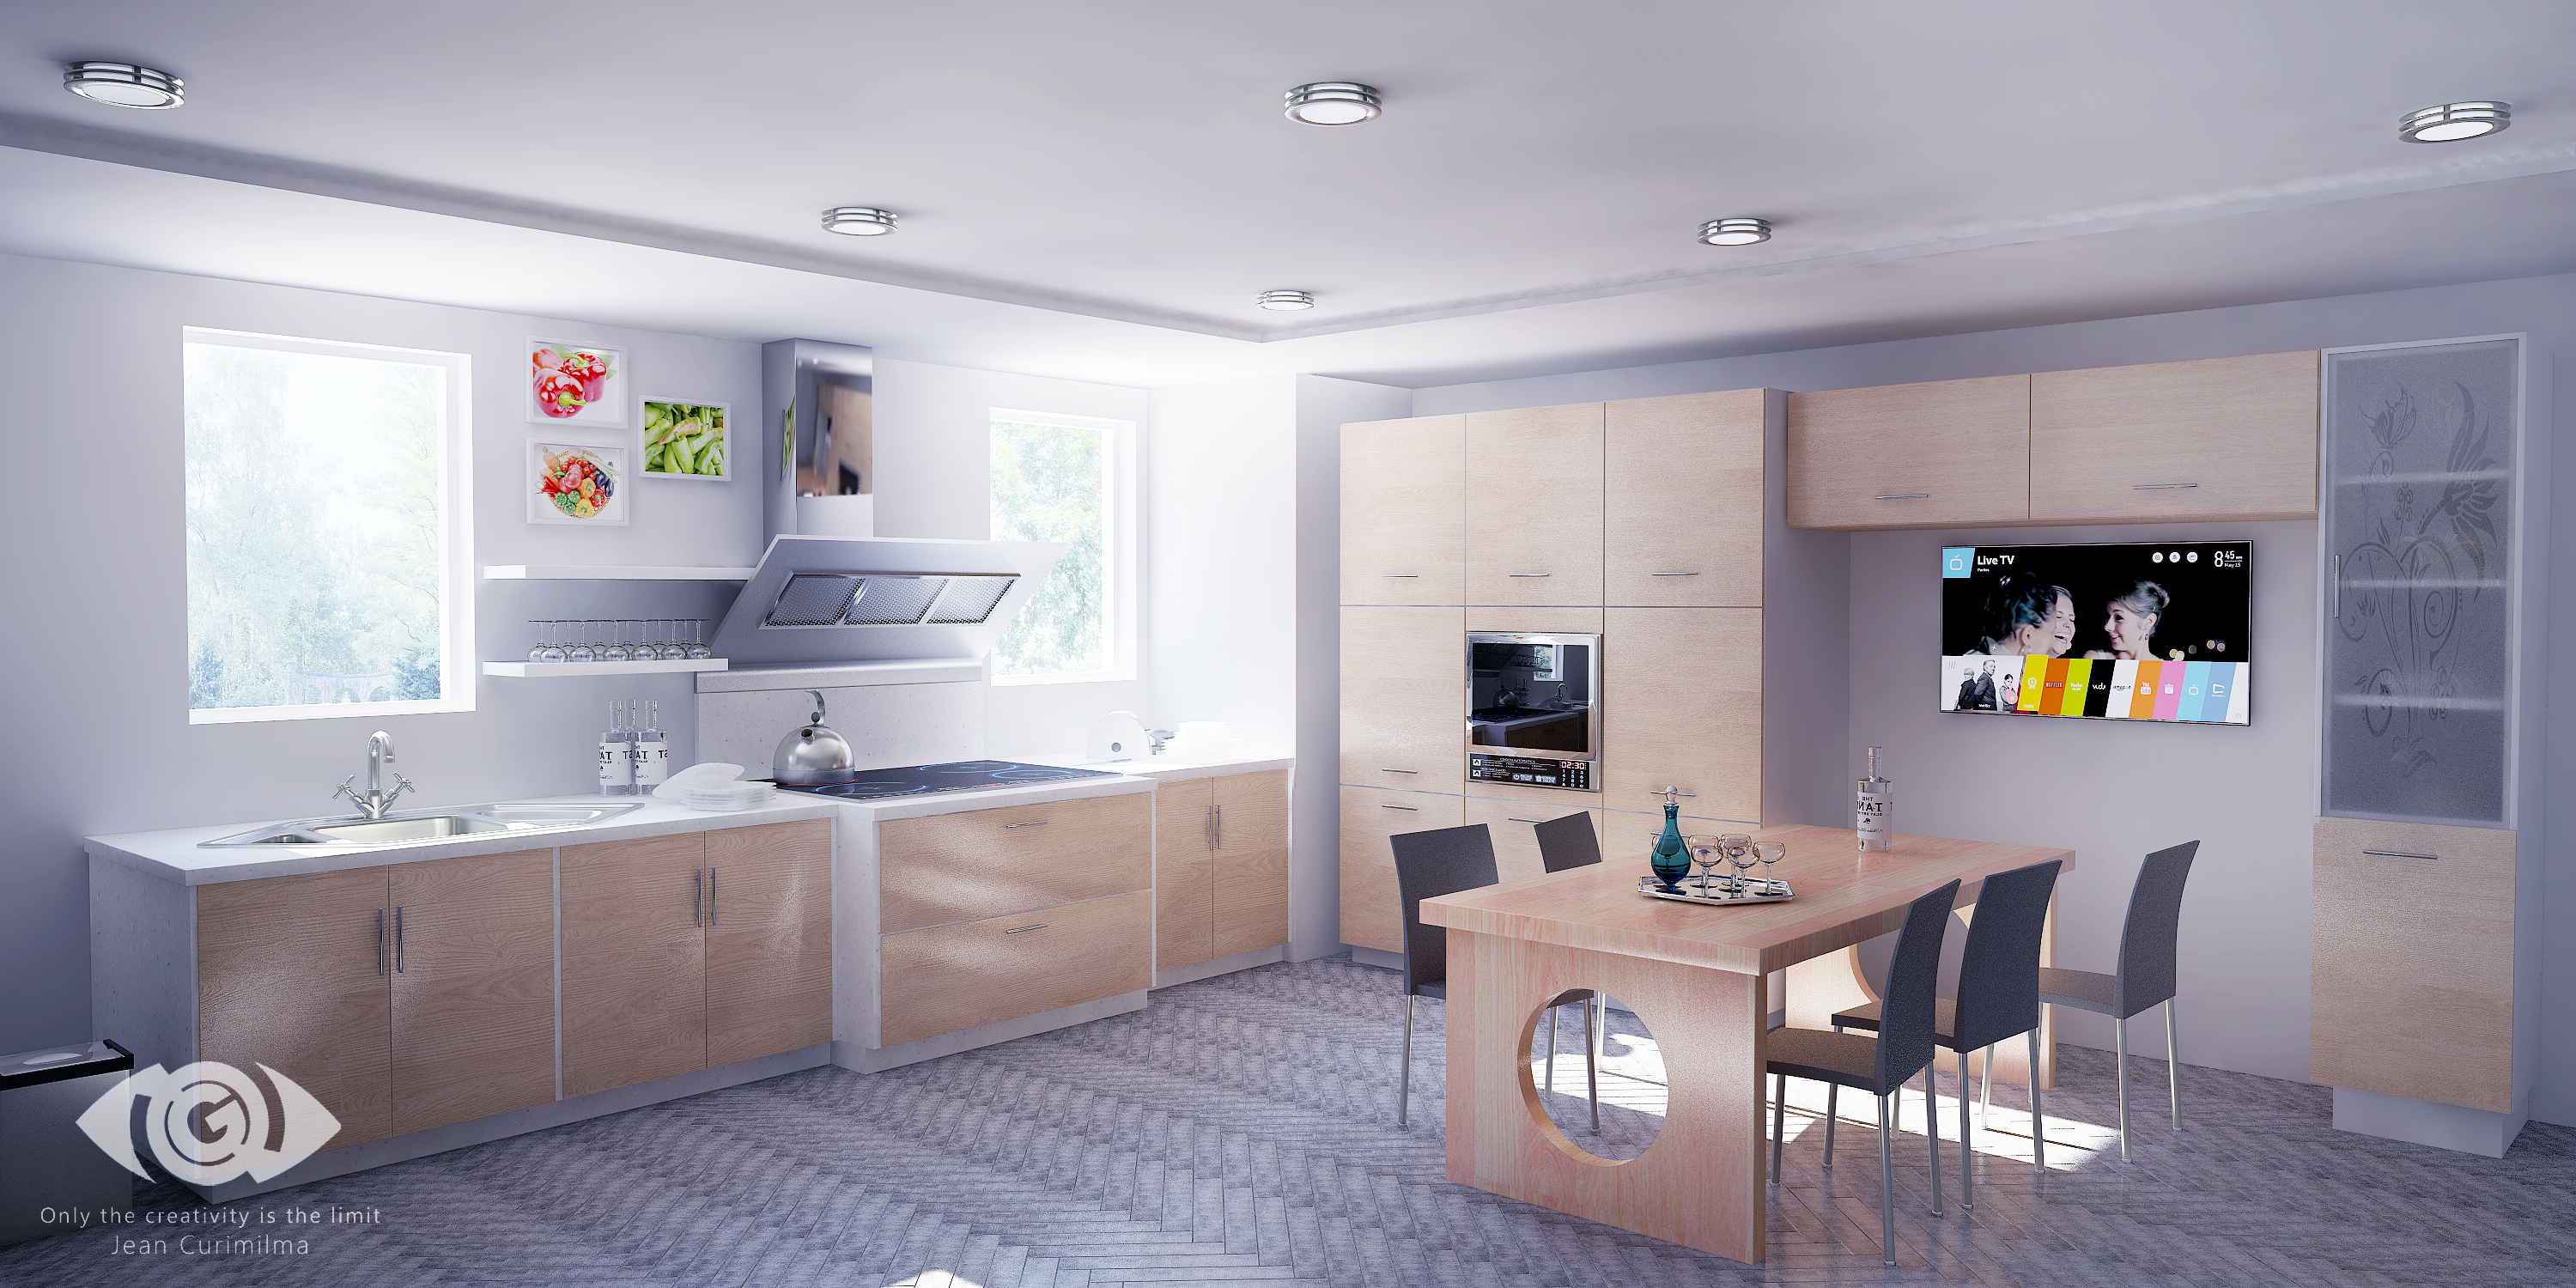 General 3000x1500 kitchen interior interior design modern